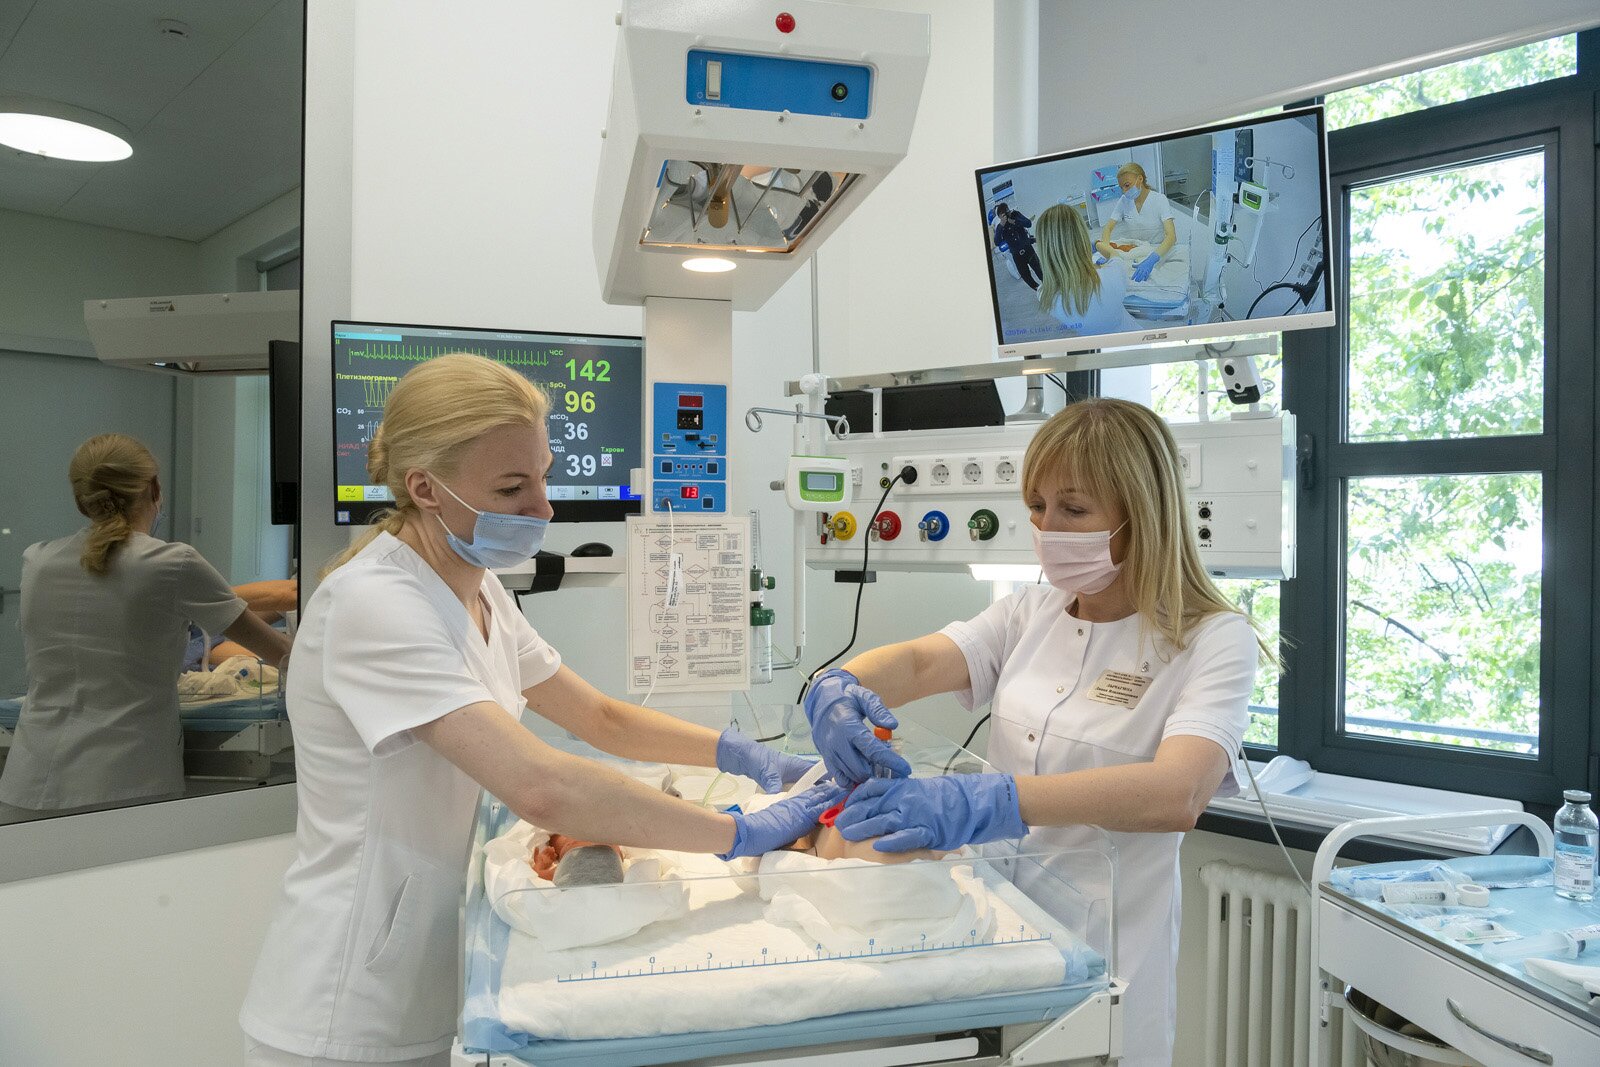 В сентябре 2021 года в Москве открылся Кадровый центр Депздрава для повышения квалификации и переподготовки  медработников городских больниц и поликлиник. В нём разработано свыше 40 программ повышения квалификации, установлено более 1,1 тысячи единиц высокотехнологичного симуляционного и медицинского оборудования. Эксперты создали 39,3 тысячи тестовых заданий для компьютерного тестирования, 1,7 тысячи заданий для оценки практических навыков и шесть тысяч ситуационных задач. Мэр столицы Сергей Собянин рассказал о работе организации.